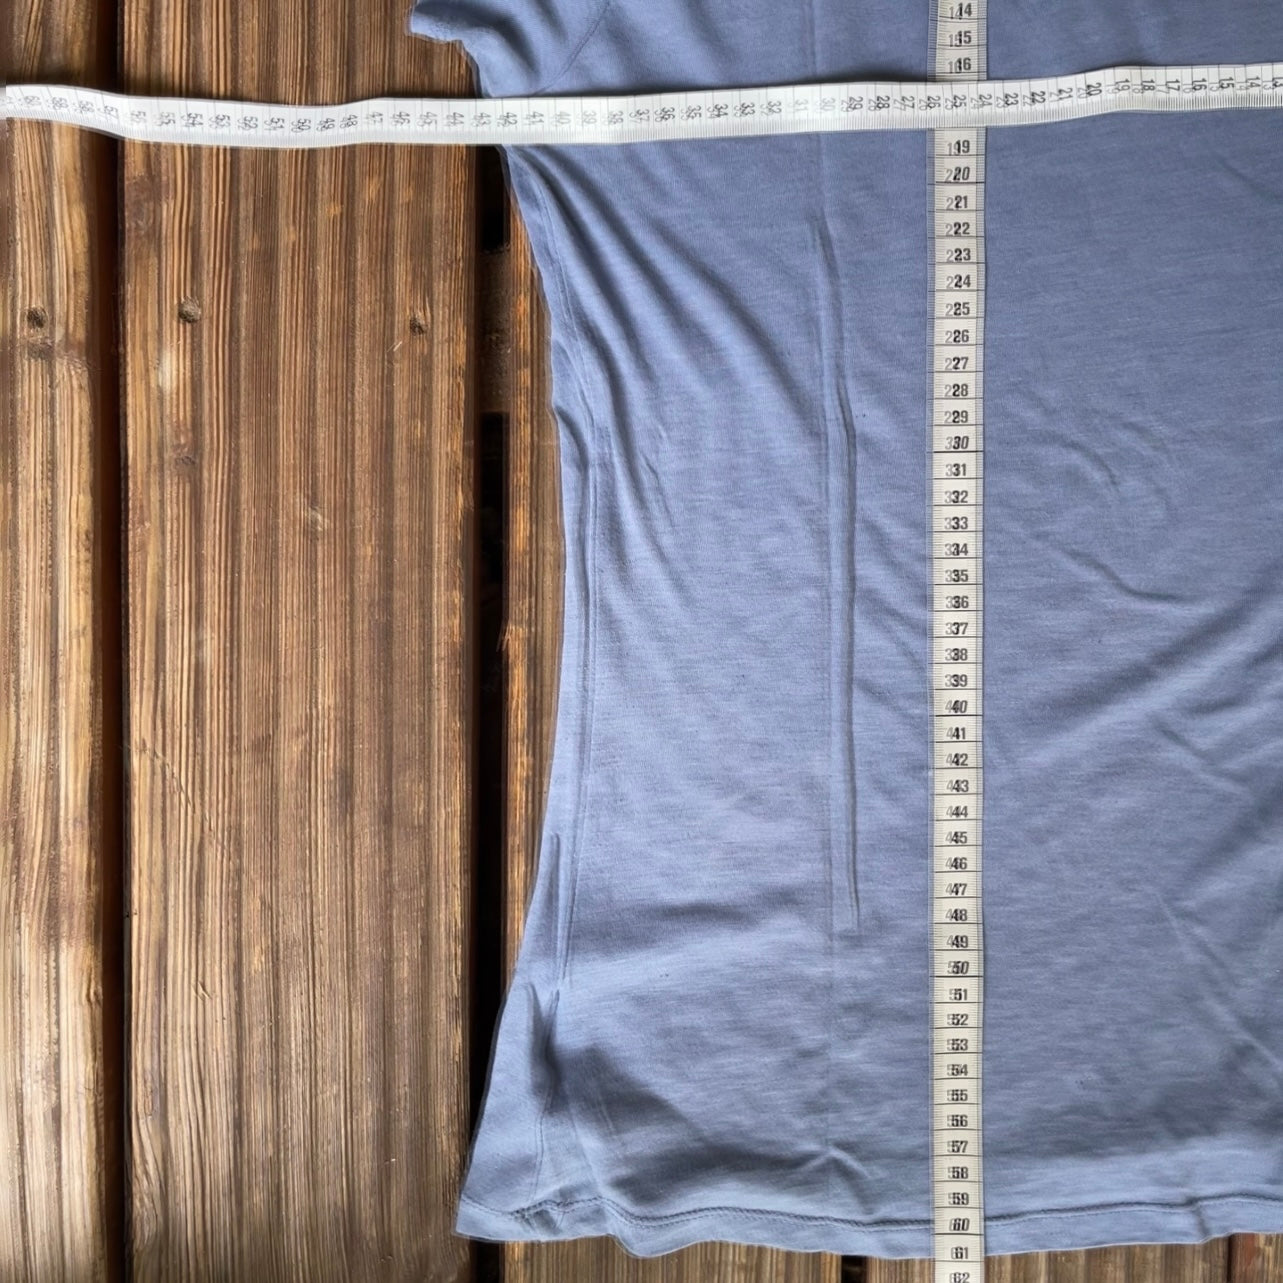 T-Shirt von Columbia (Damen S) 60% Baumwolle Flieder / lila